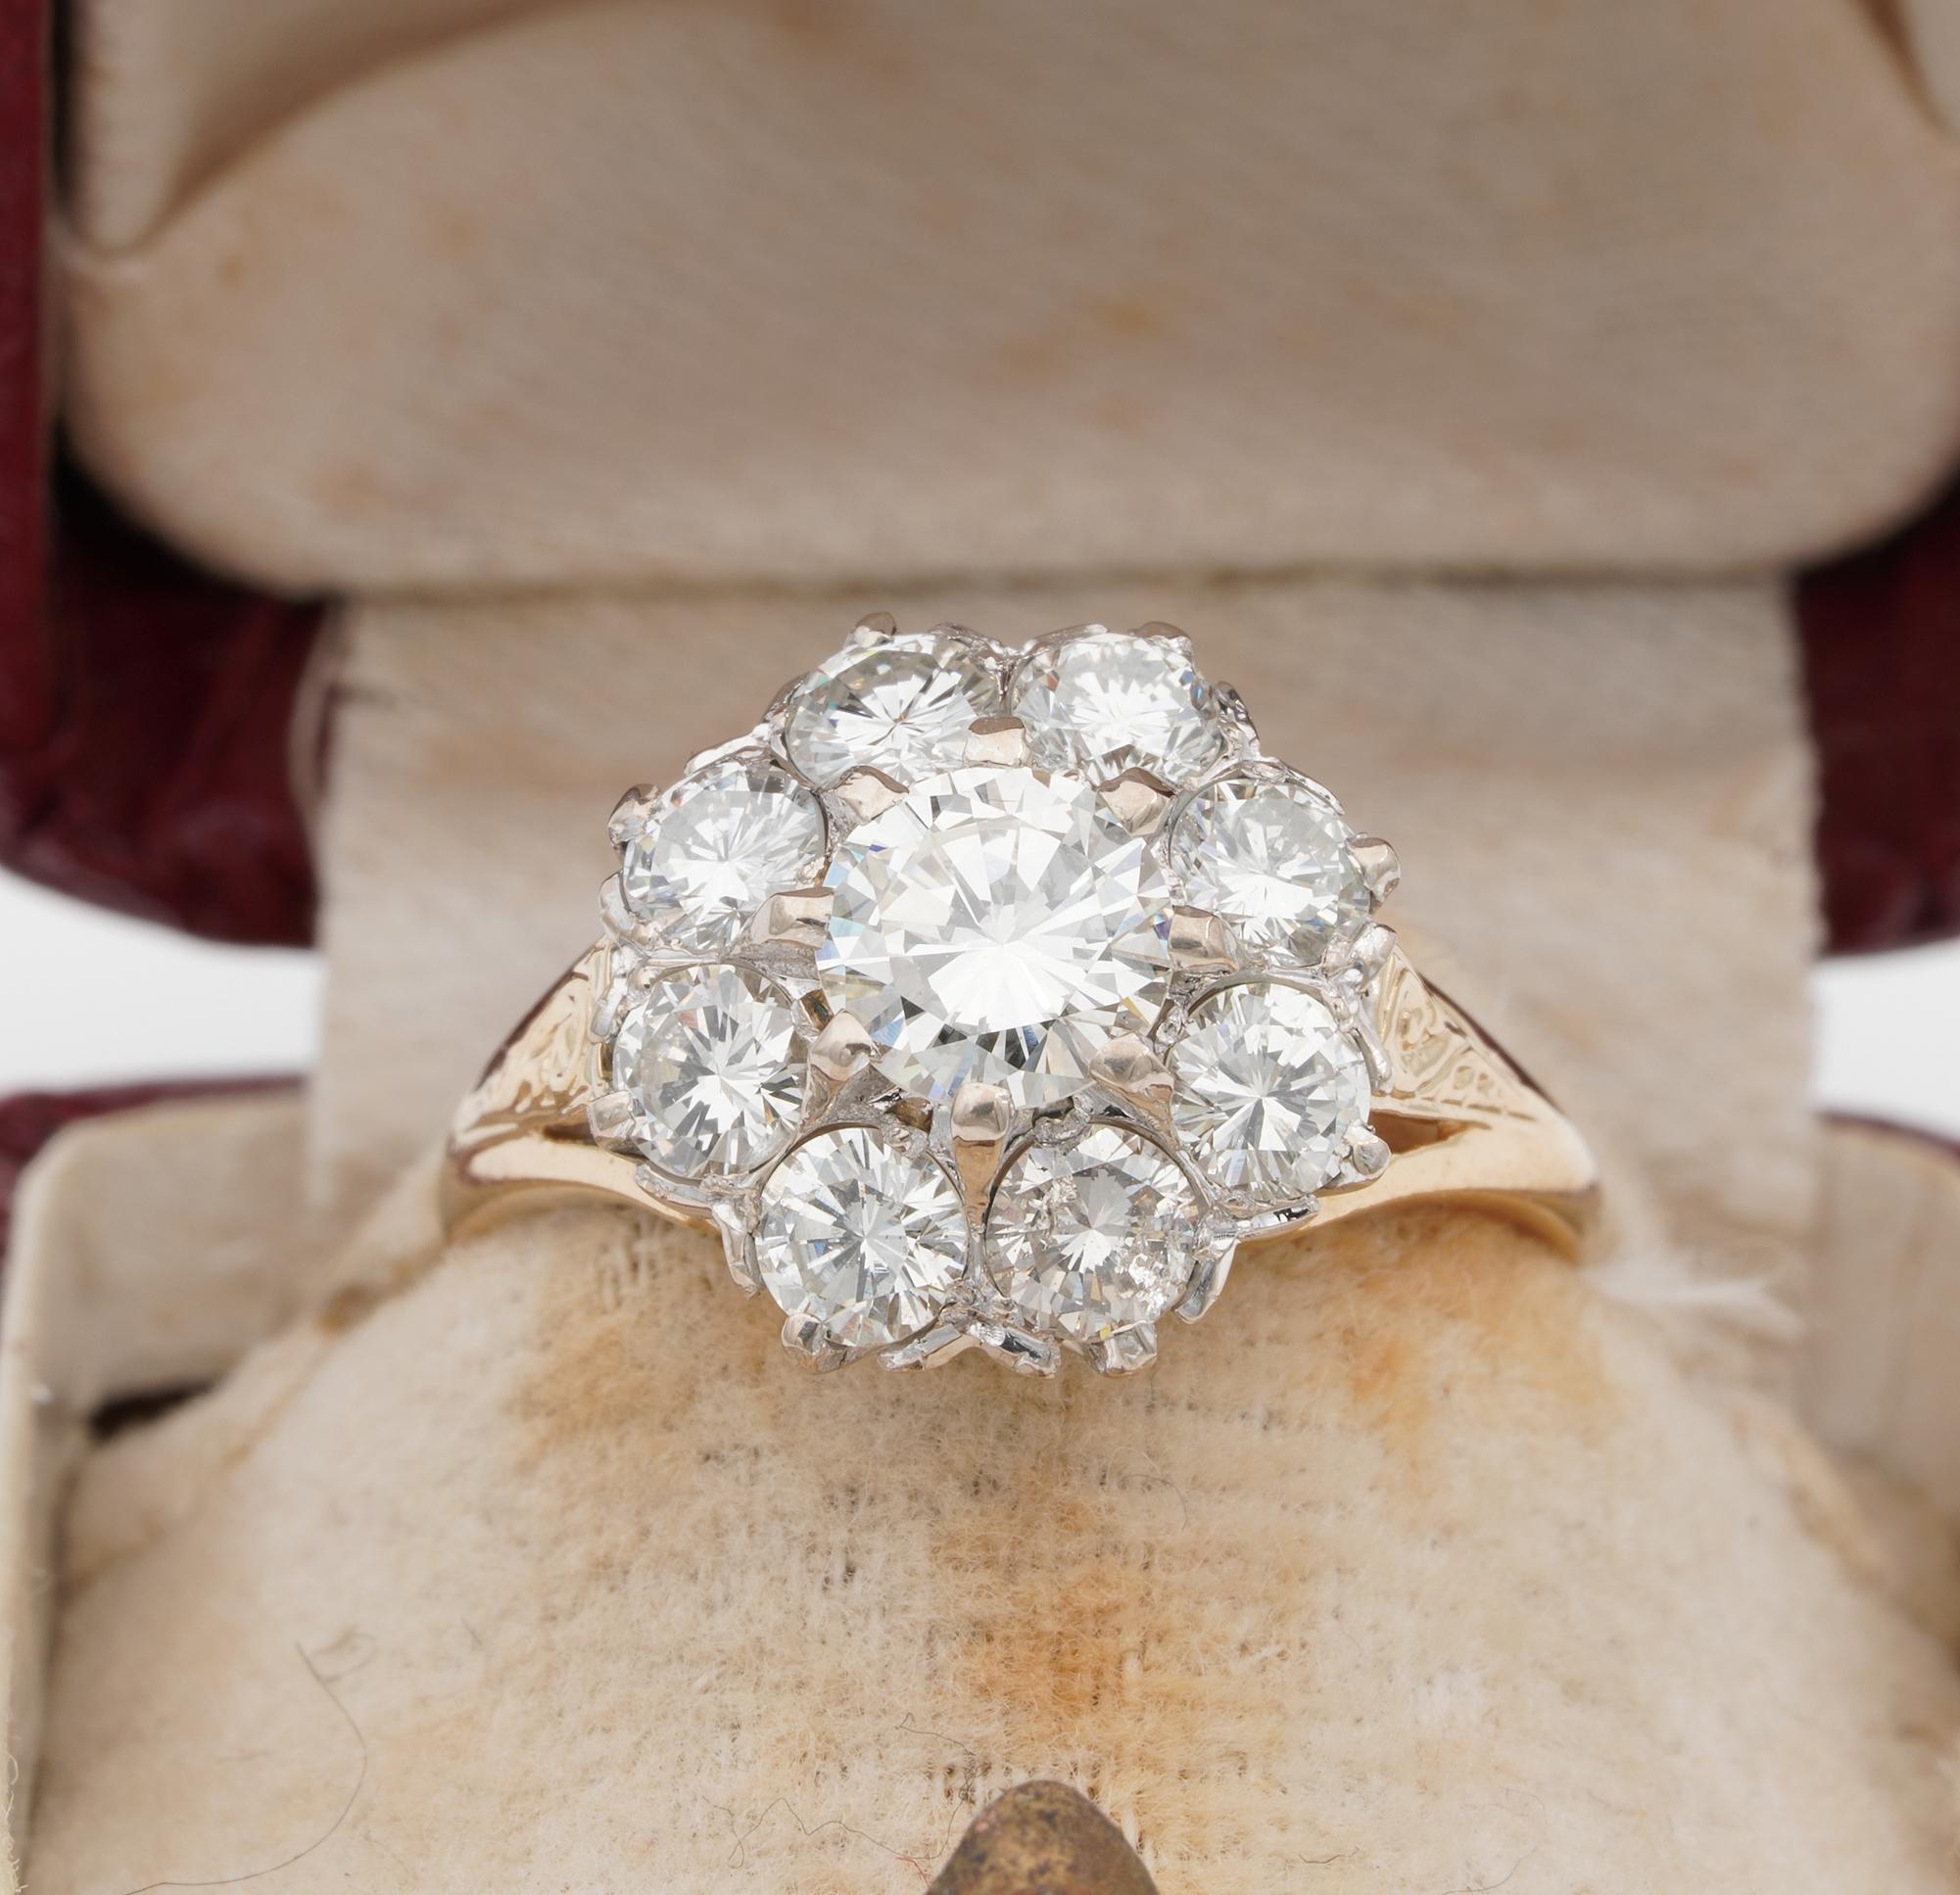 Dieser imposante stilvolle Vintage-Ring stammt aus dem Jahr 1940, geeignet zur Verlobung oder für den Lebensgefährten
Der edle Stil des Diamantclusters in der romantischen Form eines Gänseblümchens, immer geliebt und ein Statement-Ring für ein